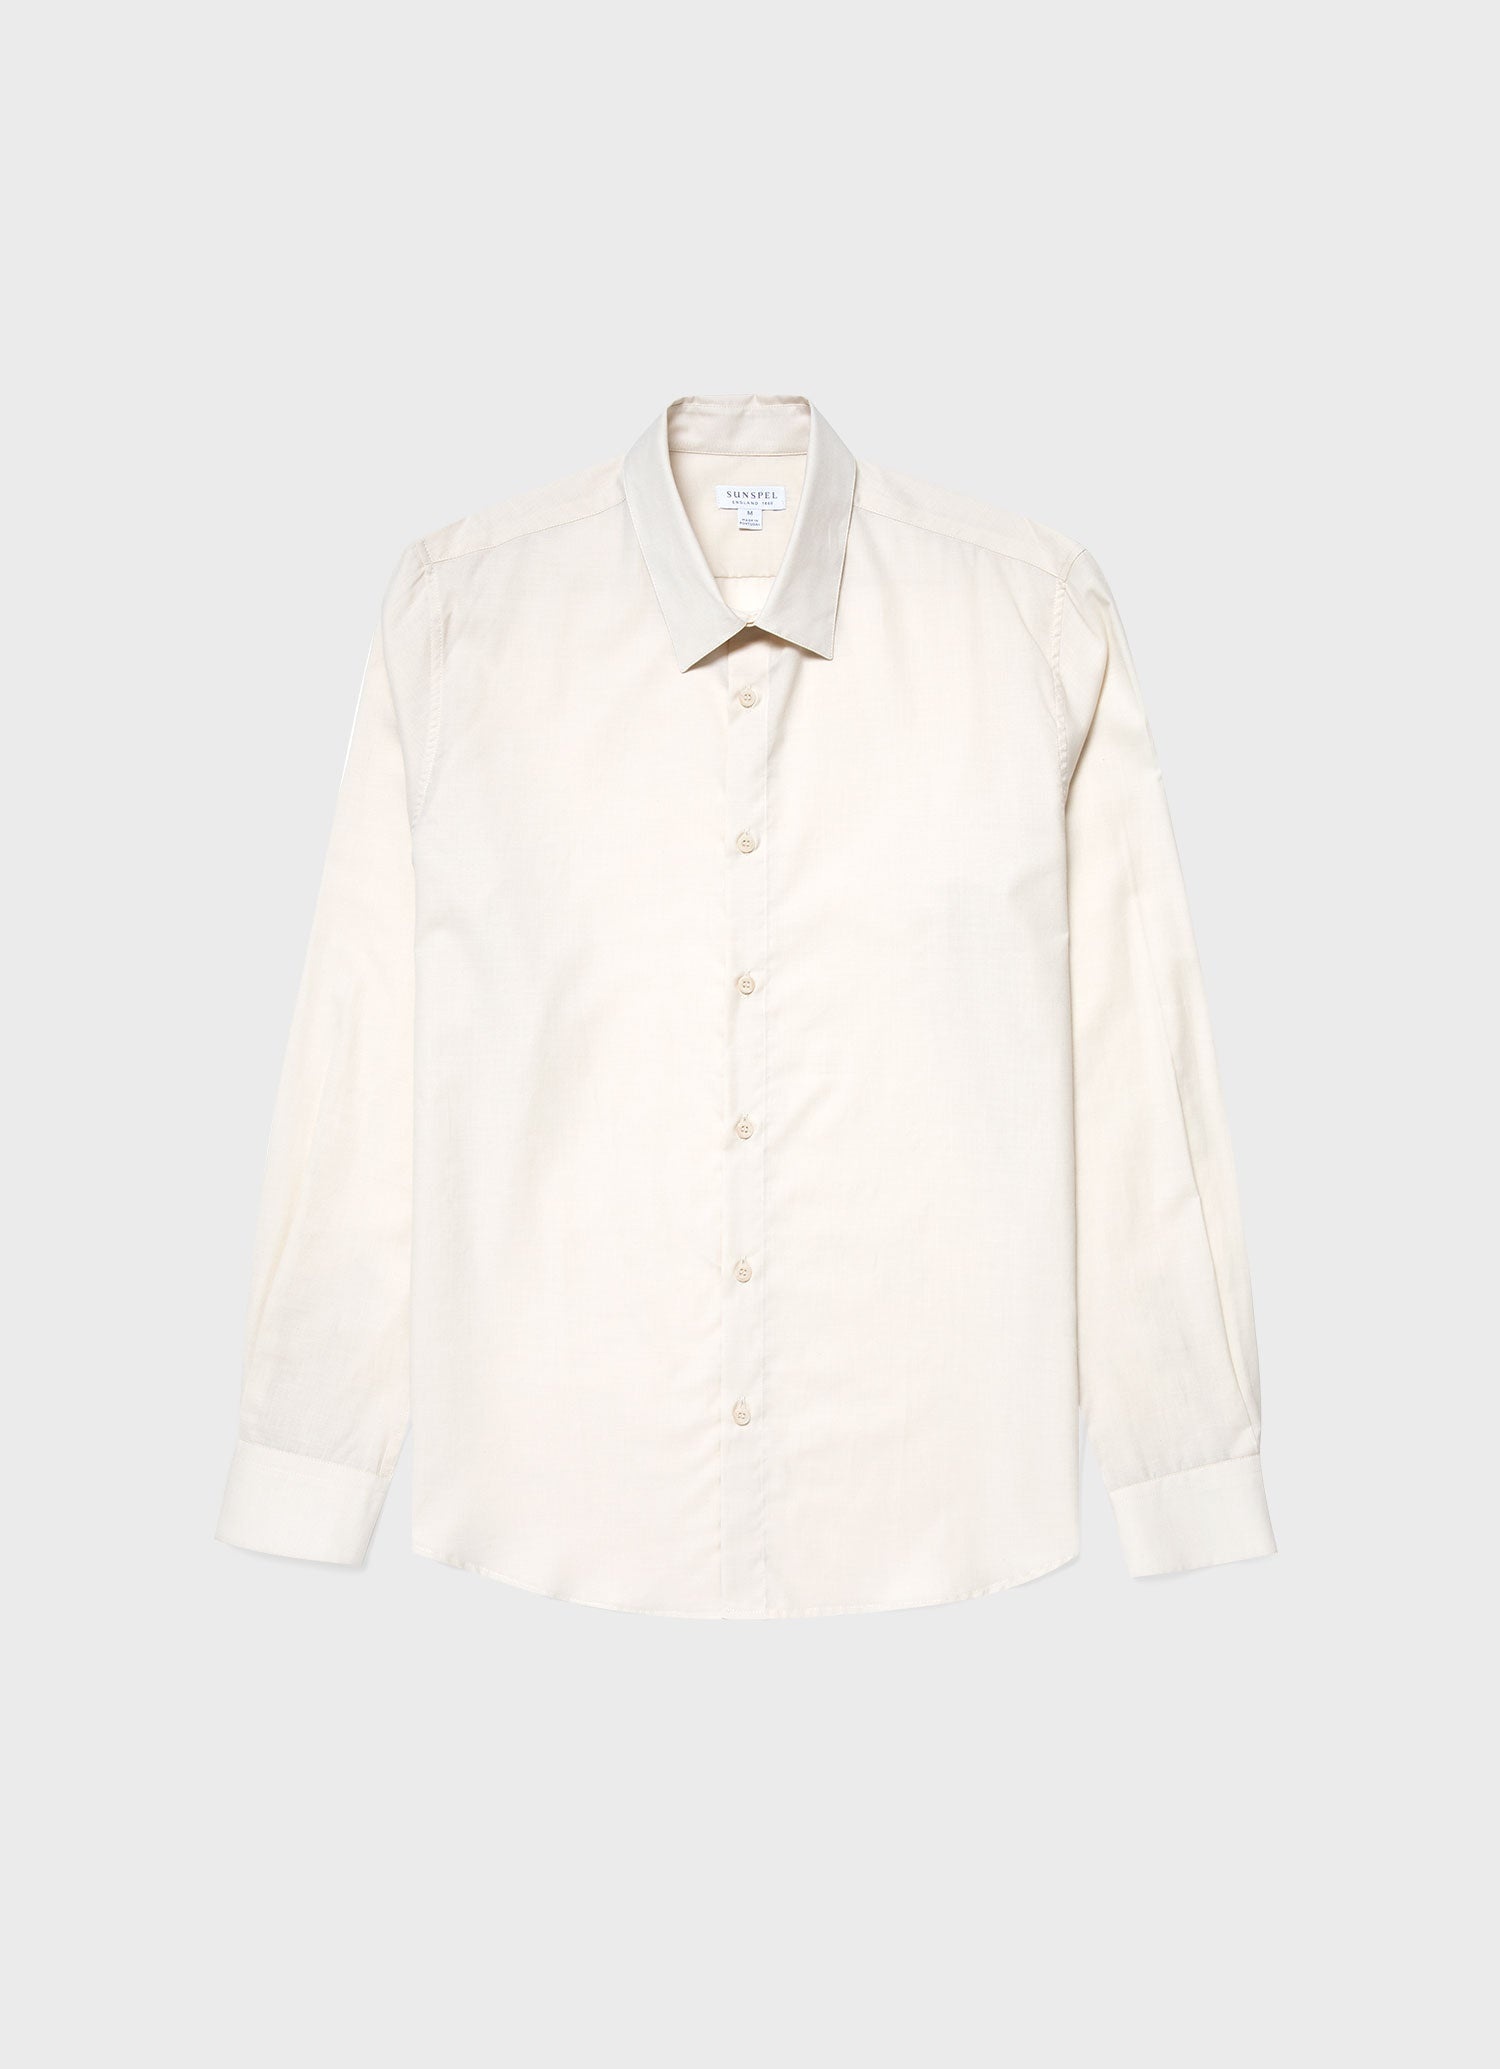 Cotton Cashmere Shirt - 1